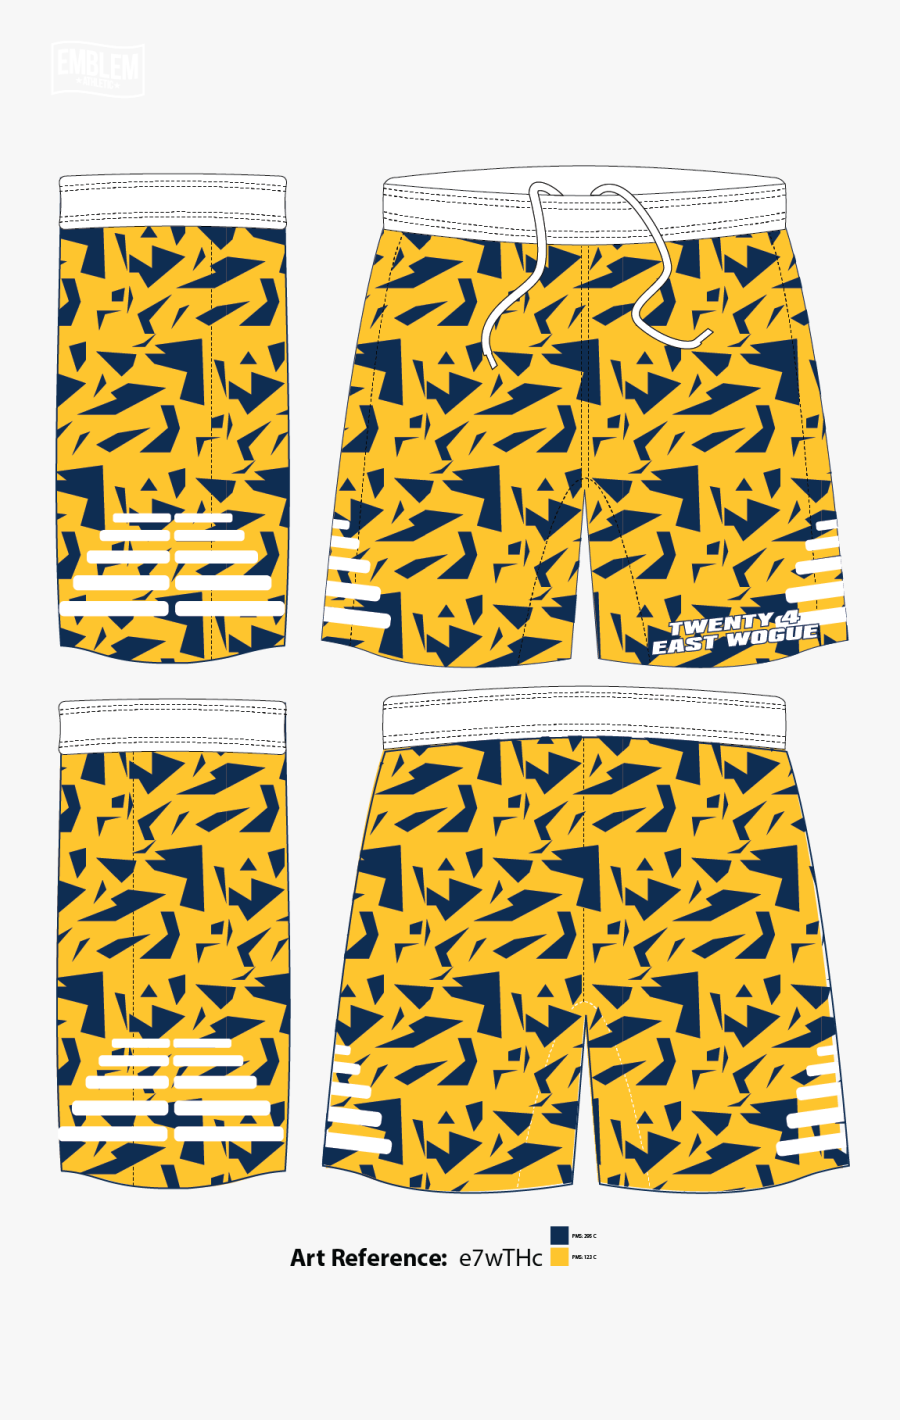 Twenty 4 East Wogue Lacrosse Shorts, Transparent Clipart